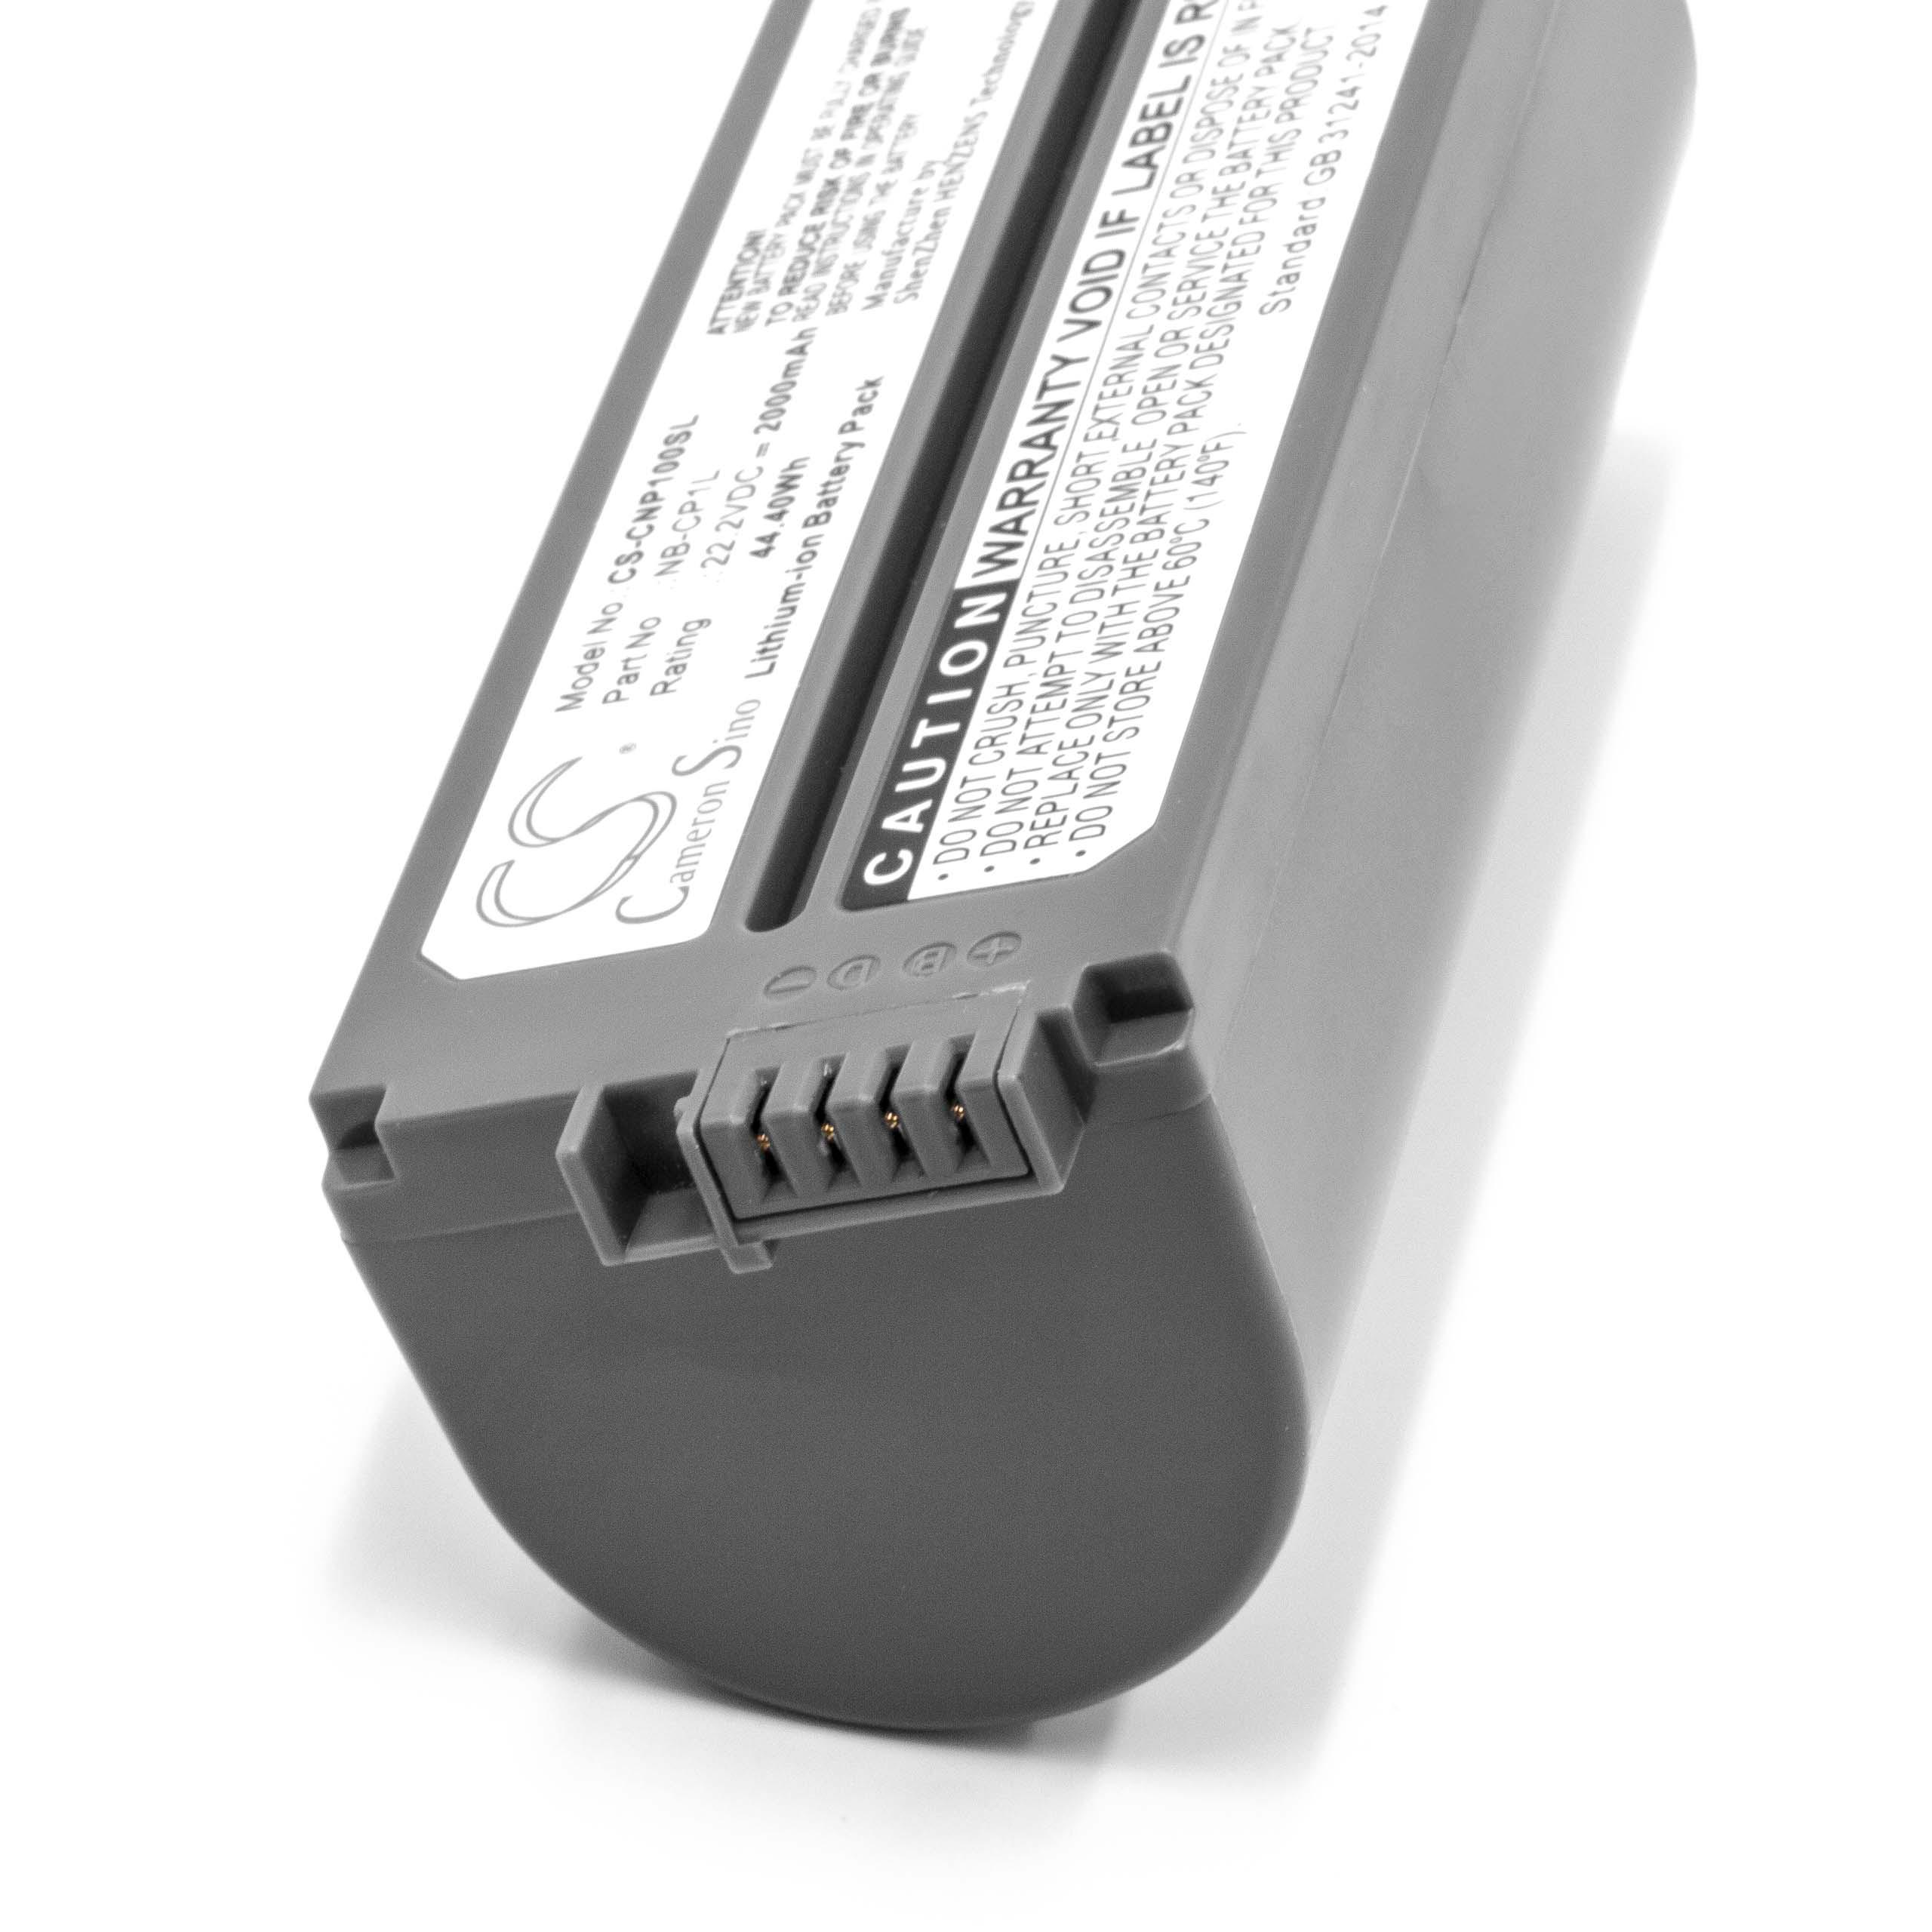 Akumulator do drukarki / drukarki etykiet zamiennik Canon CS-CP2L, CS-CP2, CP-2L - 2000 mAh 22,2 V Li-Ion